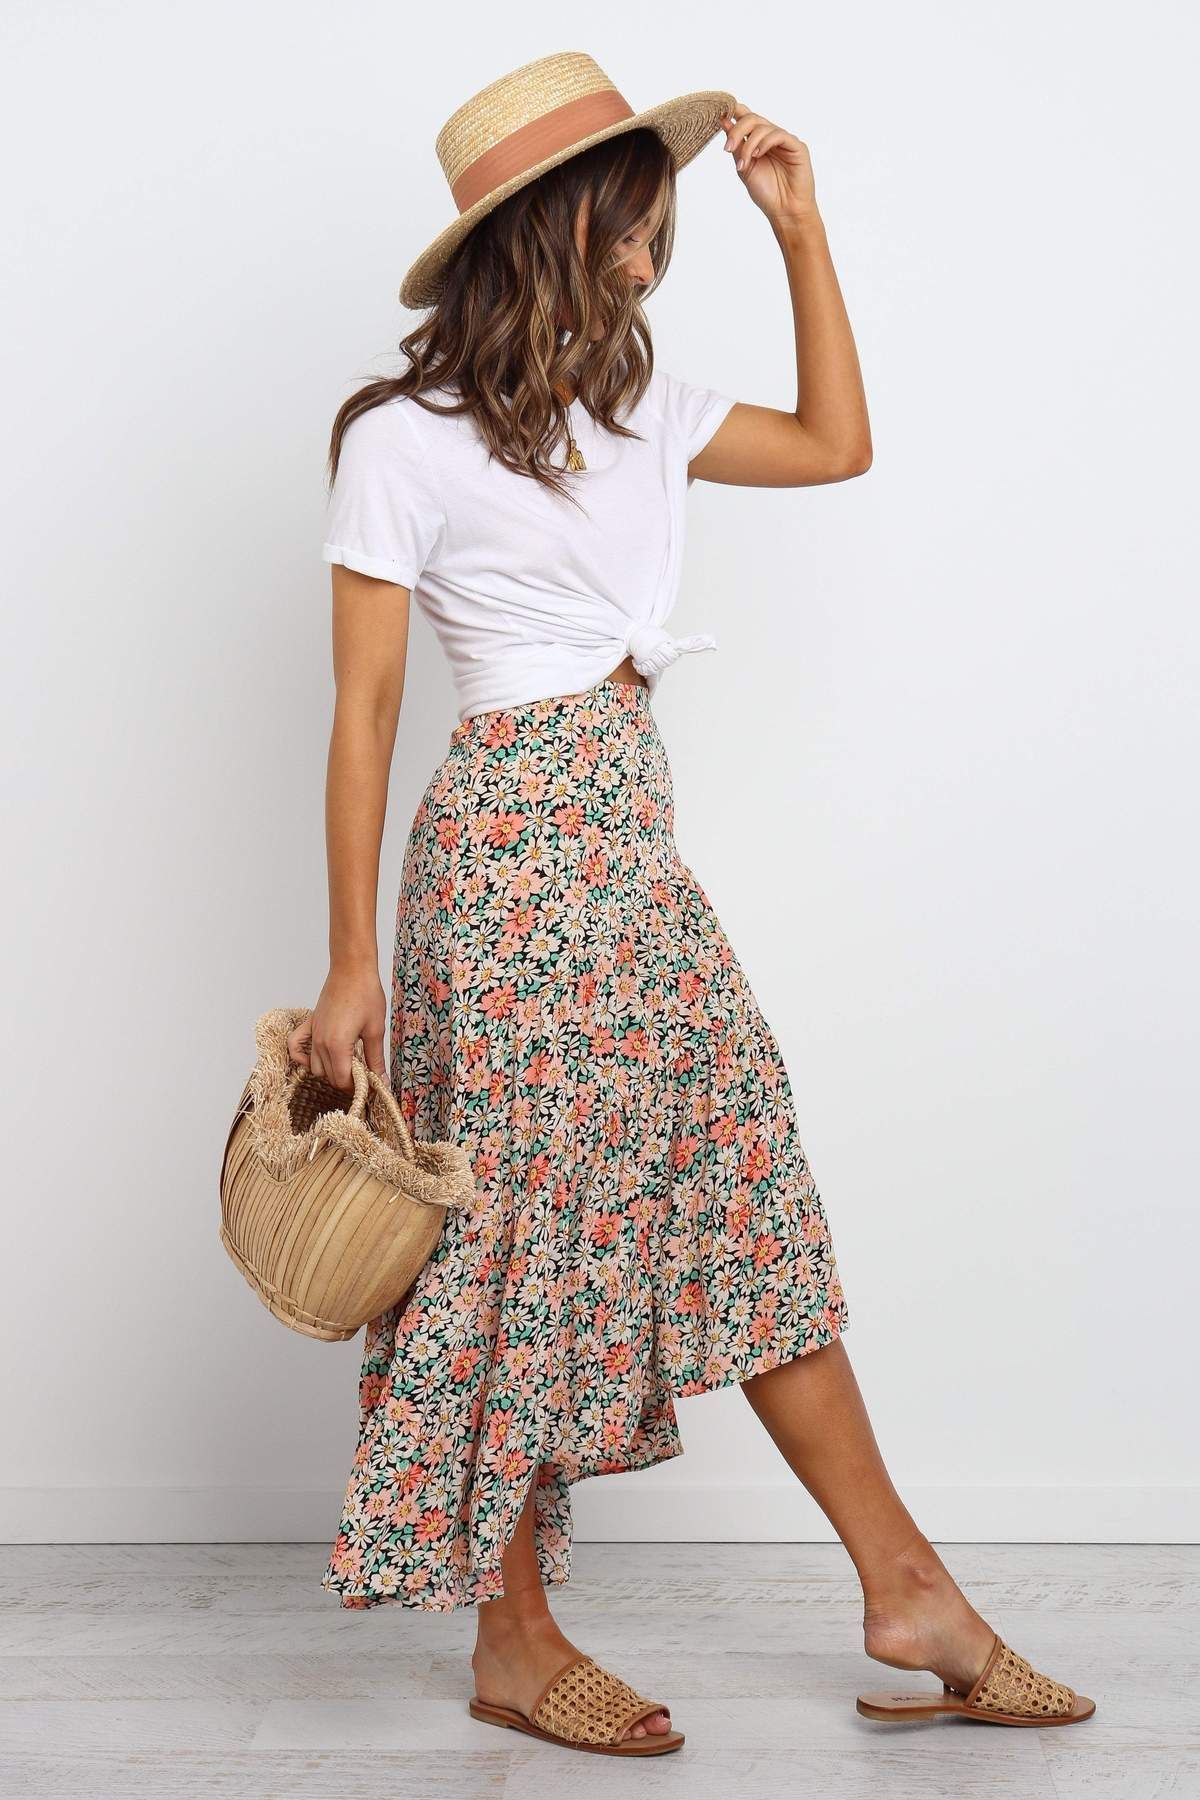 Hopkins Skirt - Multi - Hopkins Skirt - Multi -   17 style Summer classy ideas